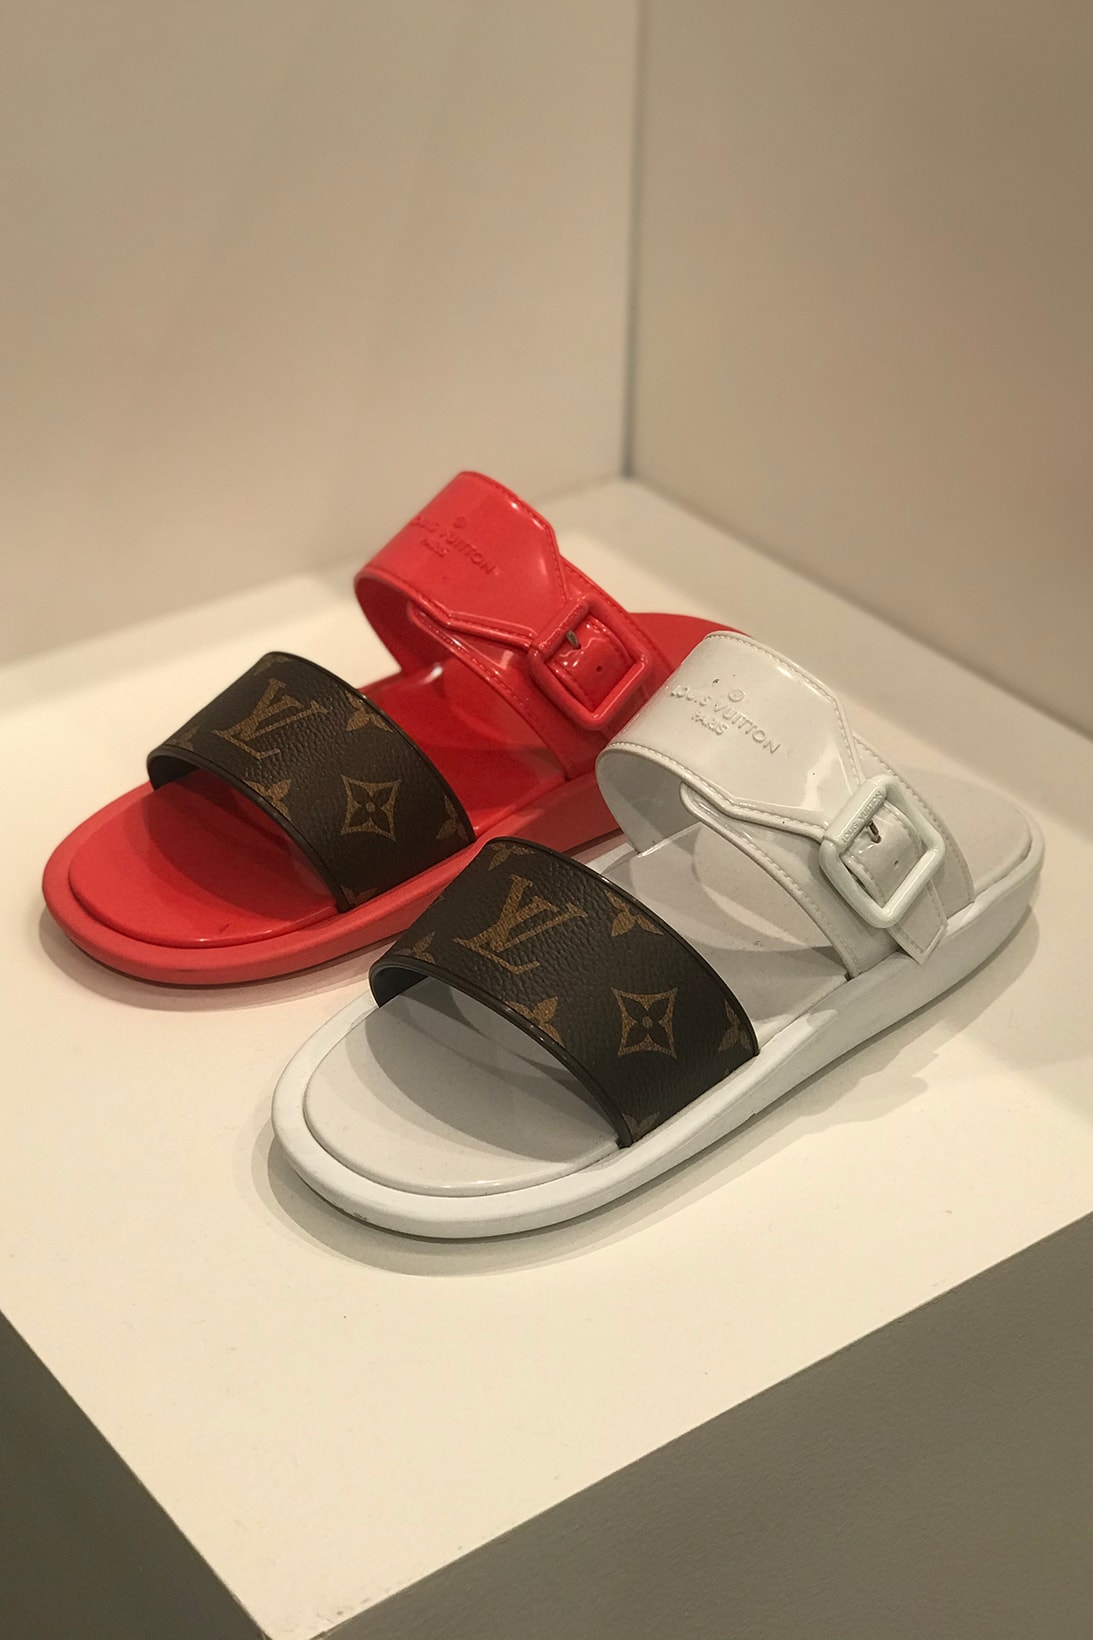 Louis Vuitton 2019 Collection Closer Look